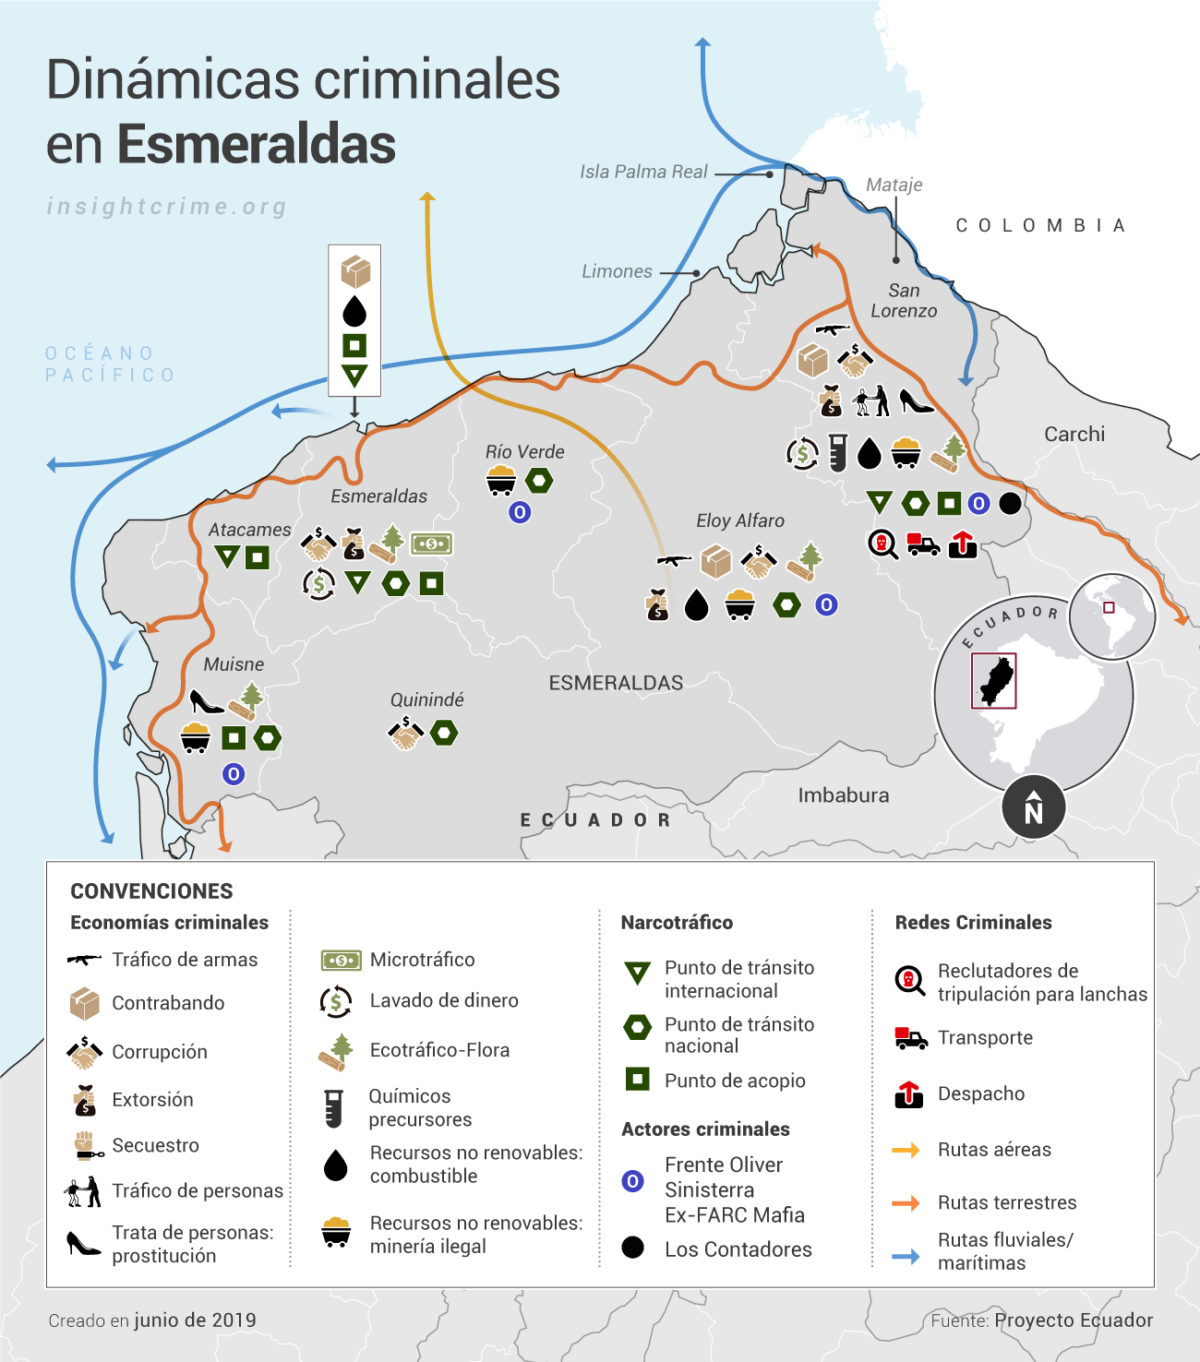 Ecuador Esmeraldas Actores y economias criminales Map InSight Crime 01 07 2019 copy